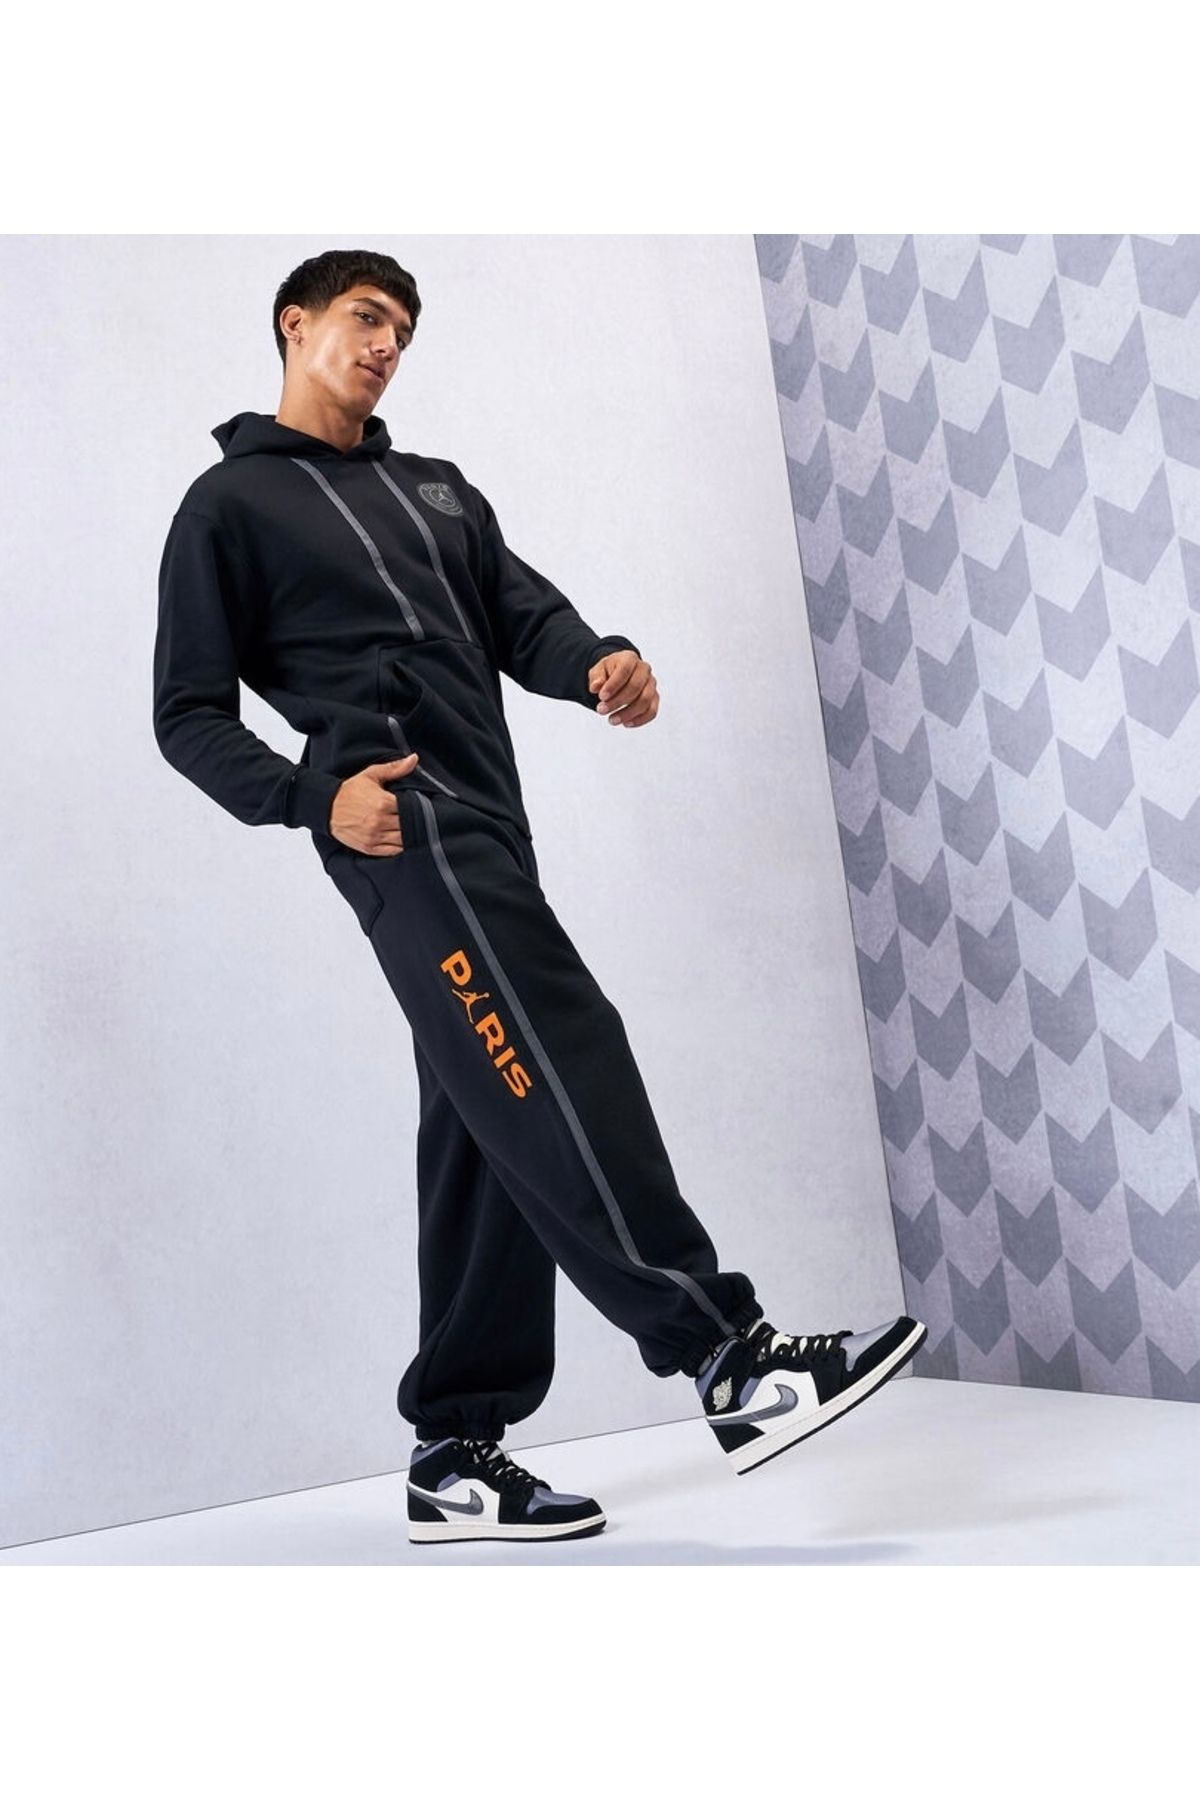 Nike Air Jordan X PSG Paris Saint-Germain HBR Bol Kesim Erkek Eşofman Altı